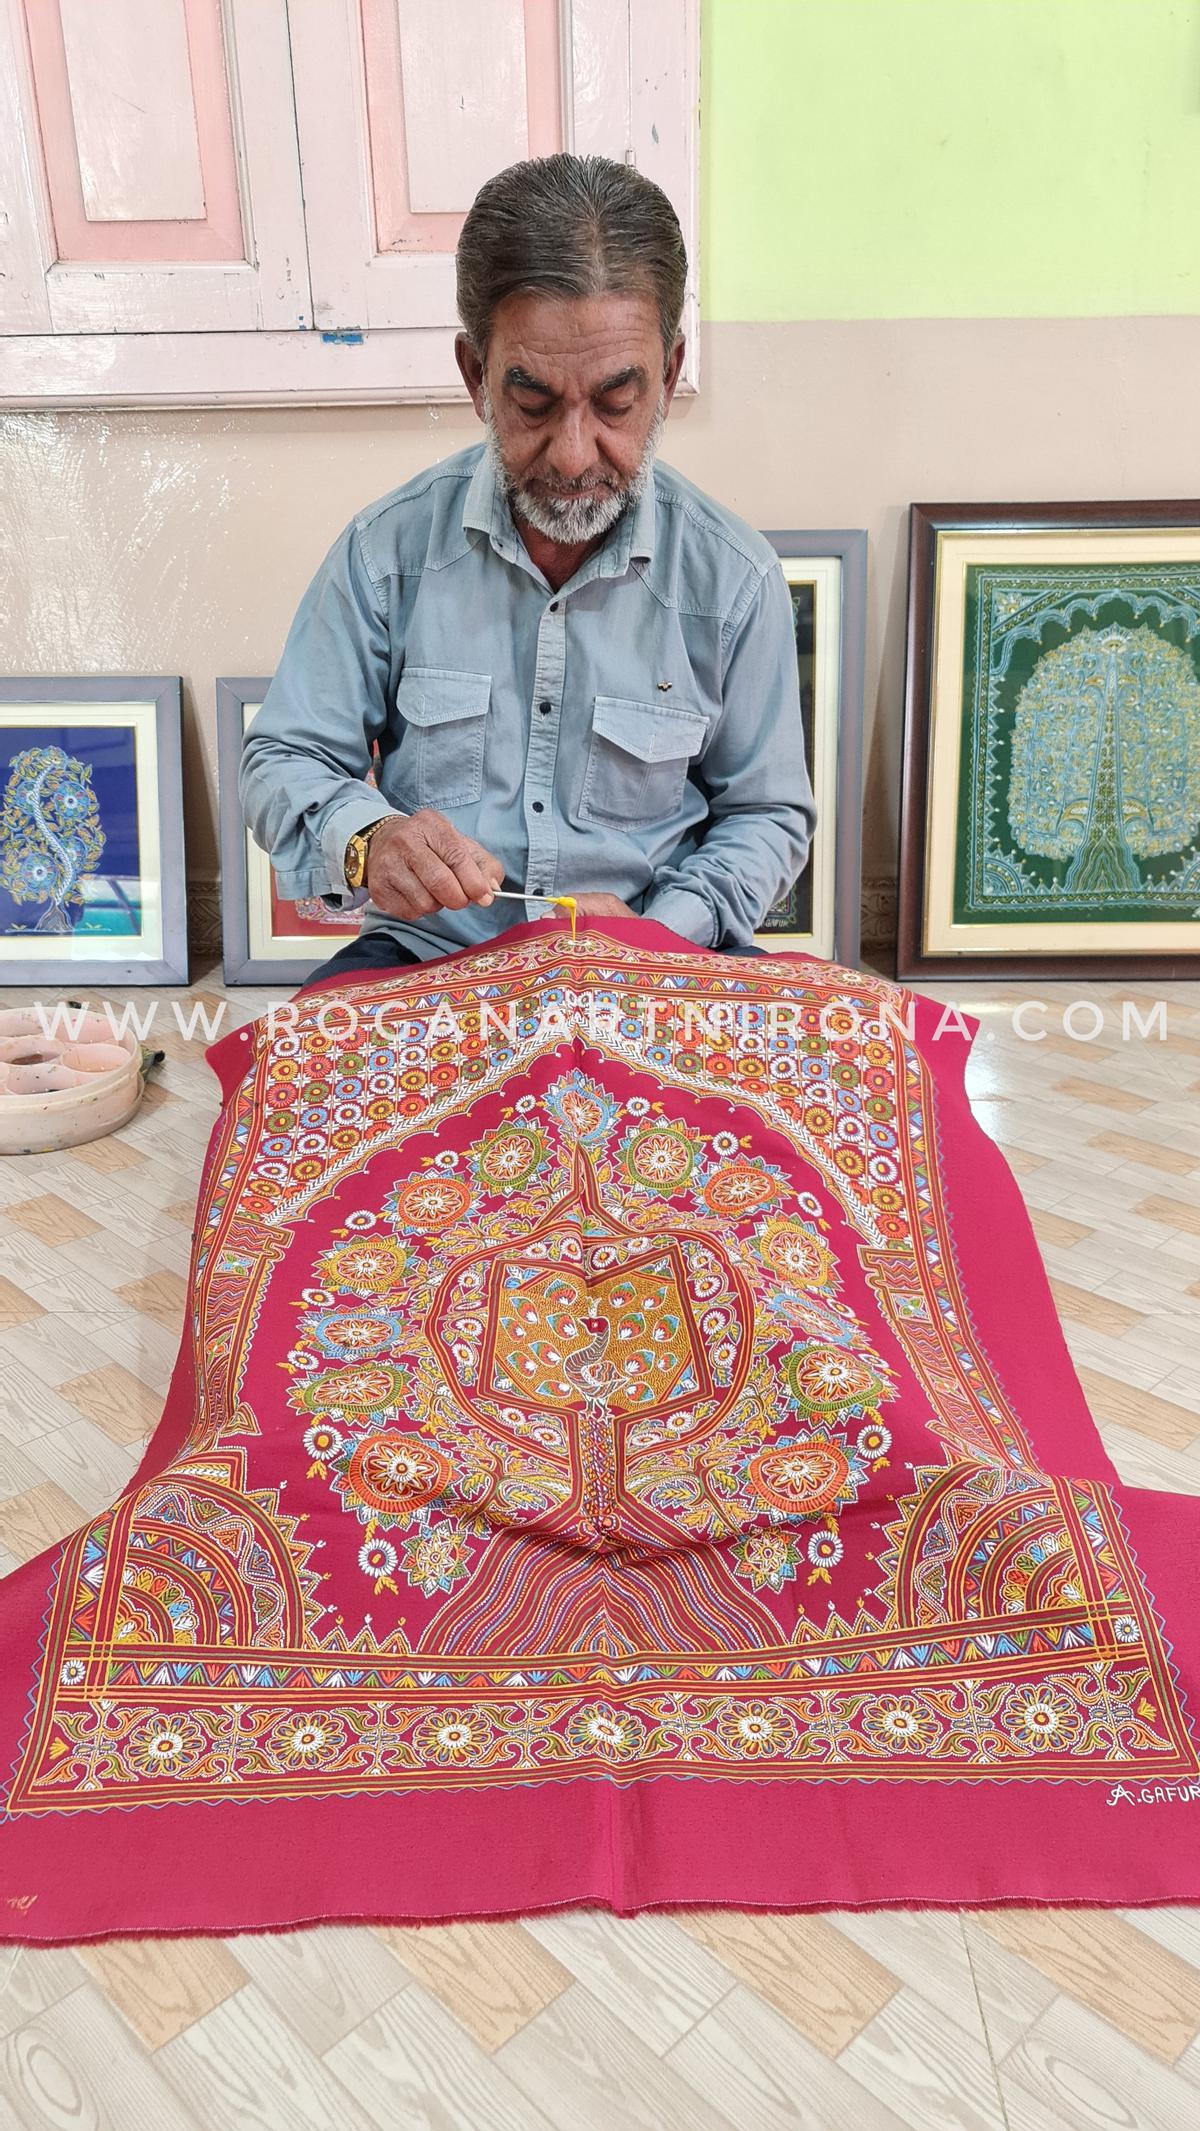 Abdul Gafur Khatri, de handhaver van Rogan-kunst in zijn dorp Nirona in het district Kutch